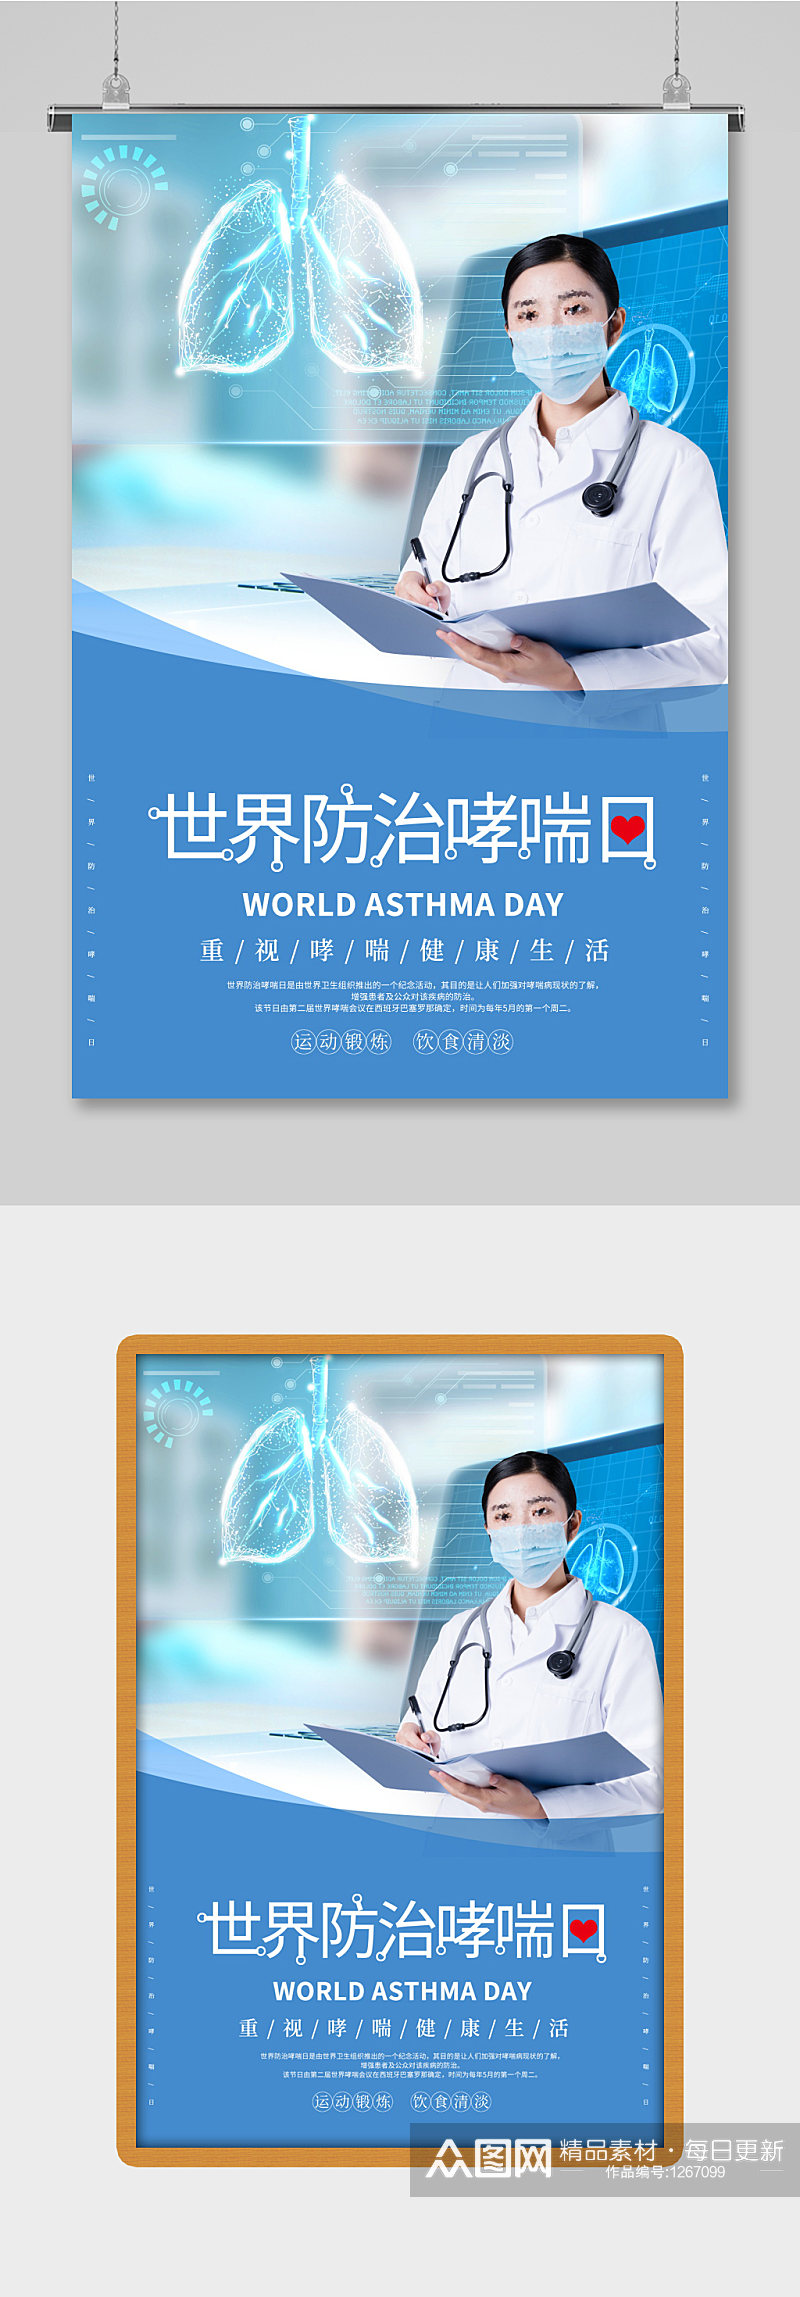 简约世界哮喘日文化宣传展板素材